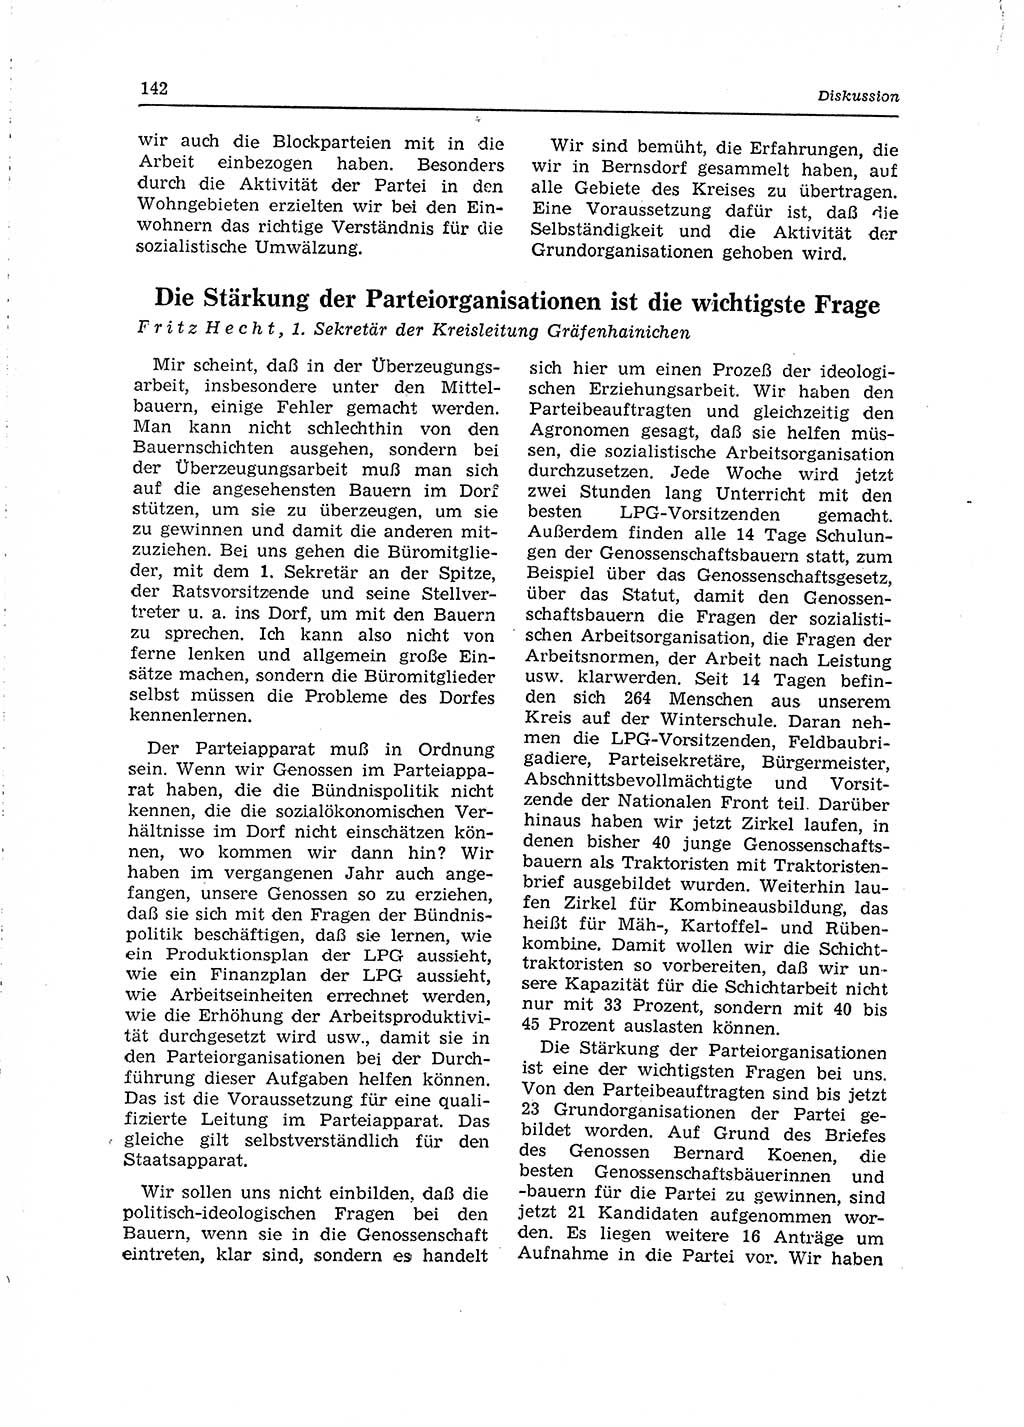 Neuer Weg (NW), Organ des Zentralkomitees (ZK) der SED (Sozialistische Einheitspartei Deutschlands) für Fragen des Parteilebens, 15. Jahrgang [Deutsche Demokratische Republik (DDR)] 1960, Seite 142 (NW ZK SED DDR 1960, S. 142)